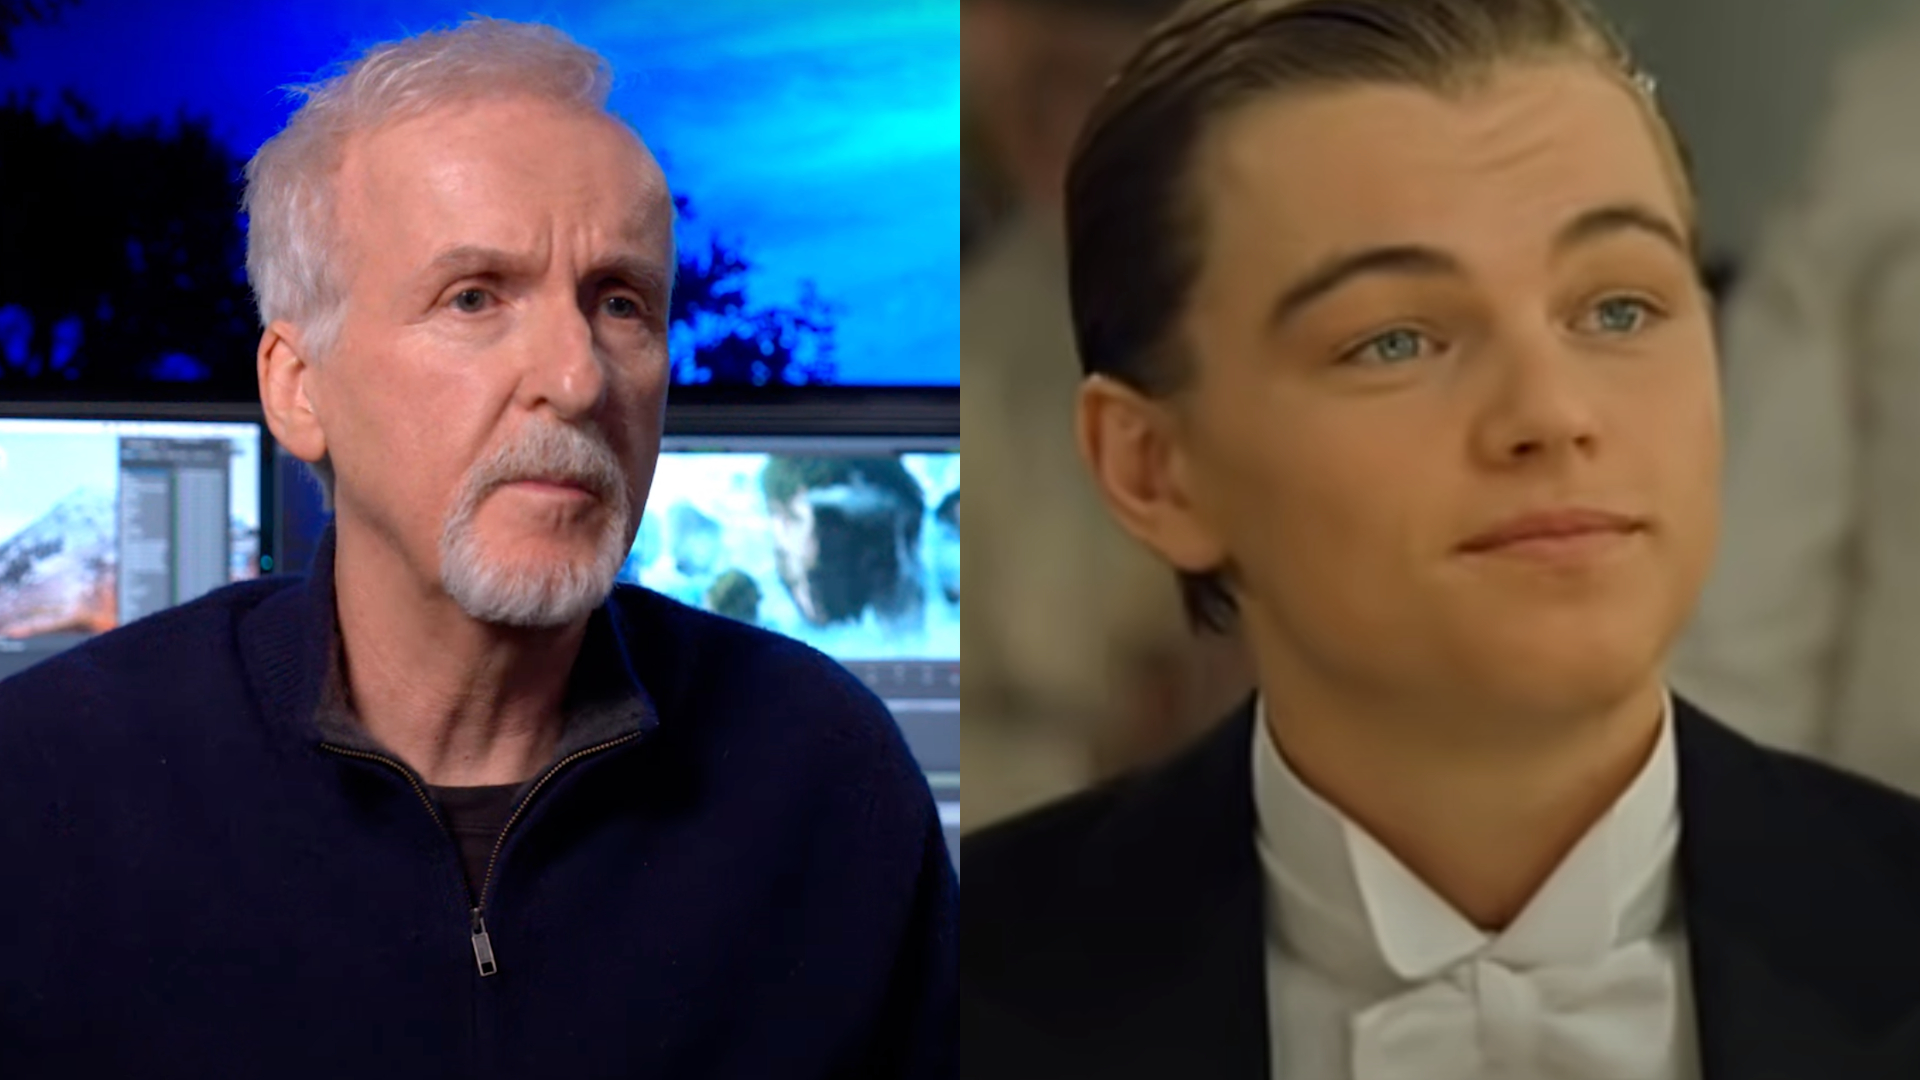 James Cameron revela que Leonardo DiCaprio quase perdeu papel em “Titanic” por atitude inapropriada; assista